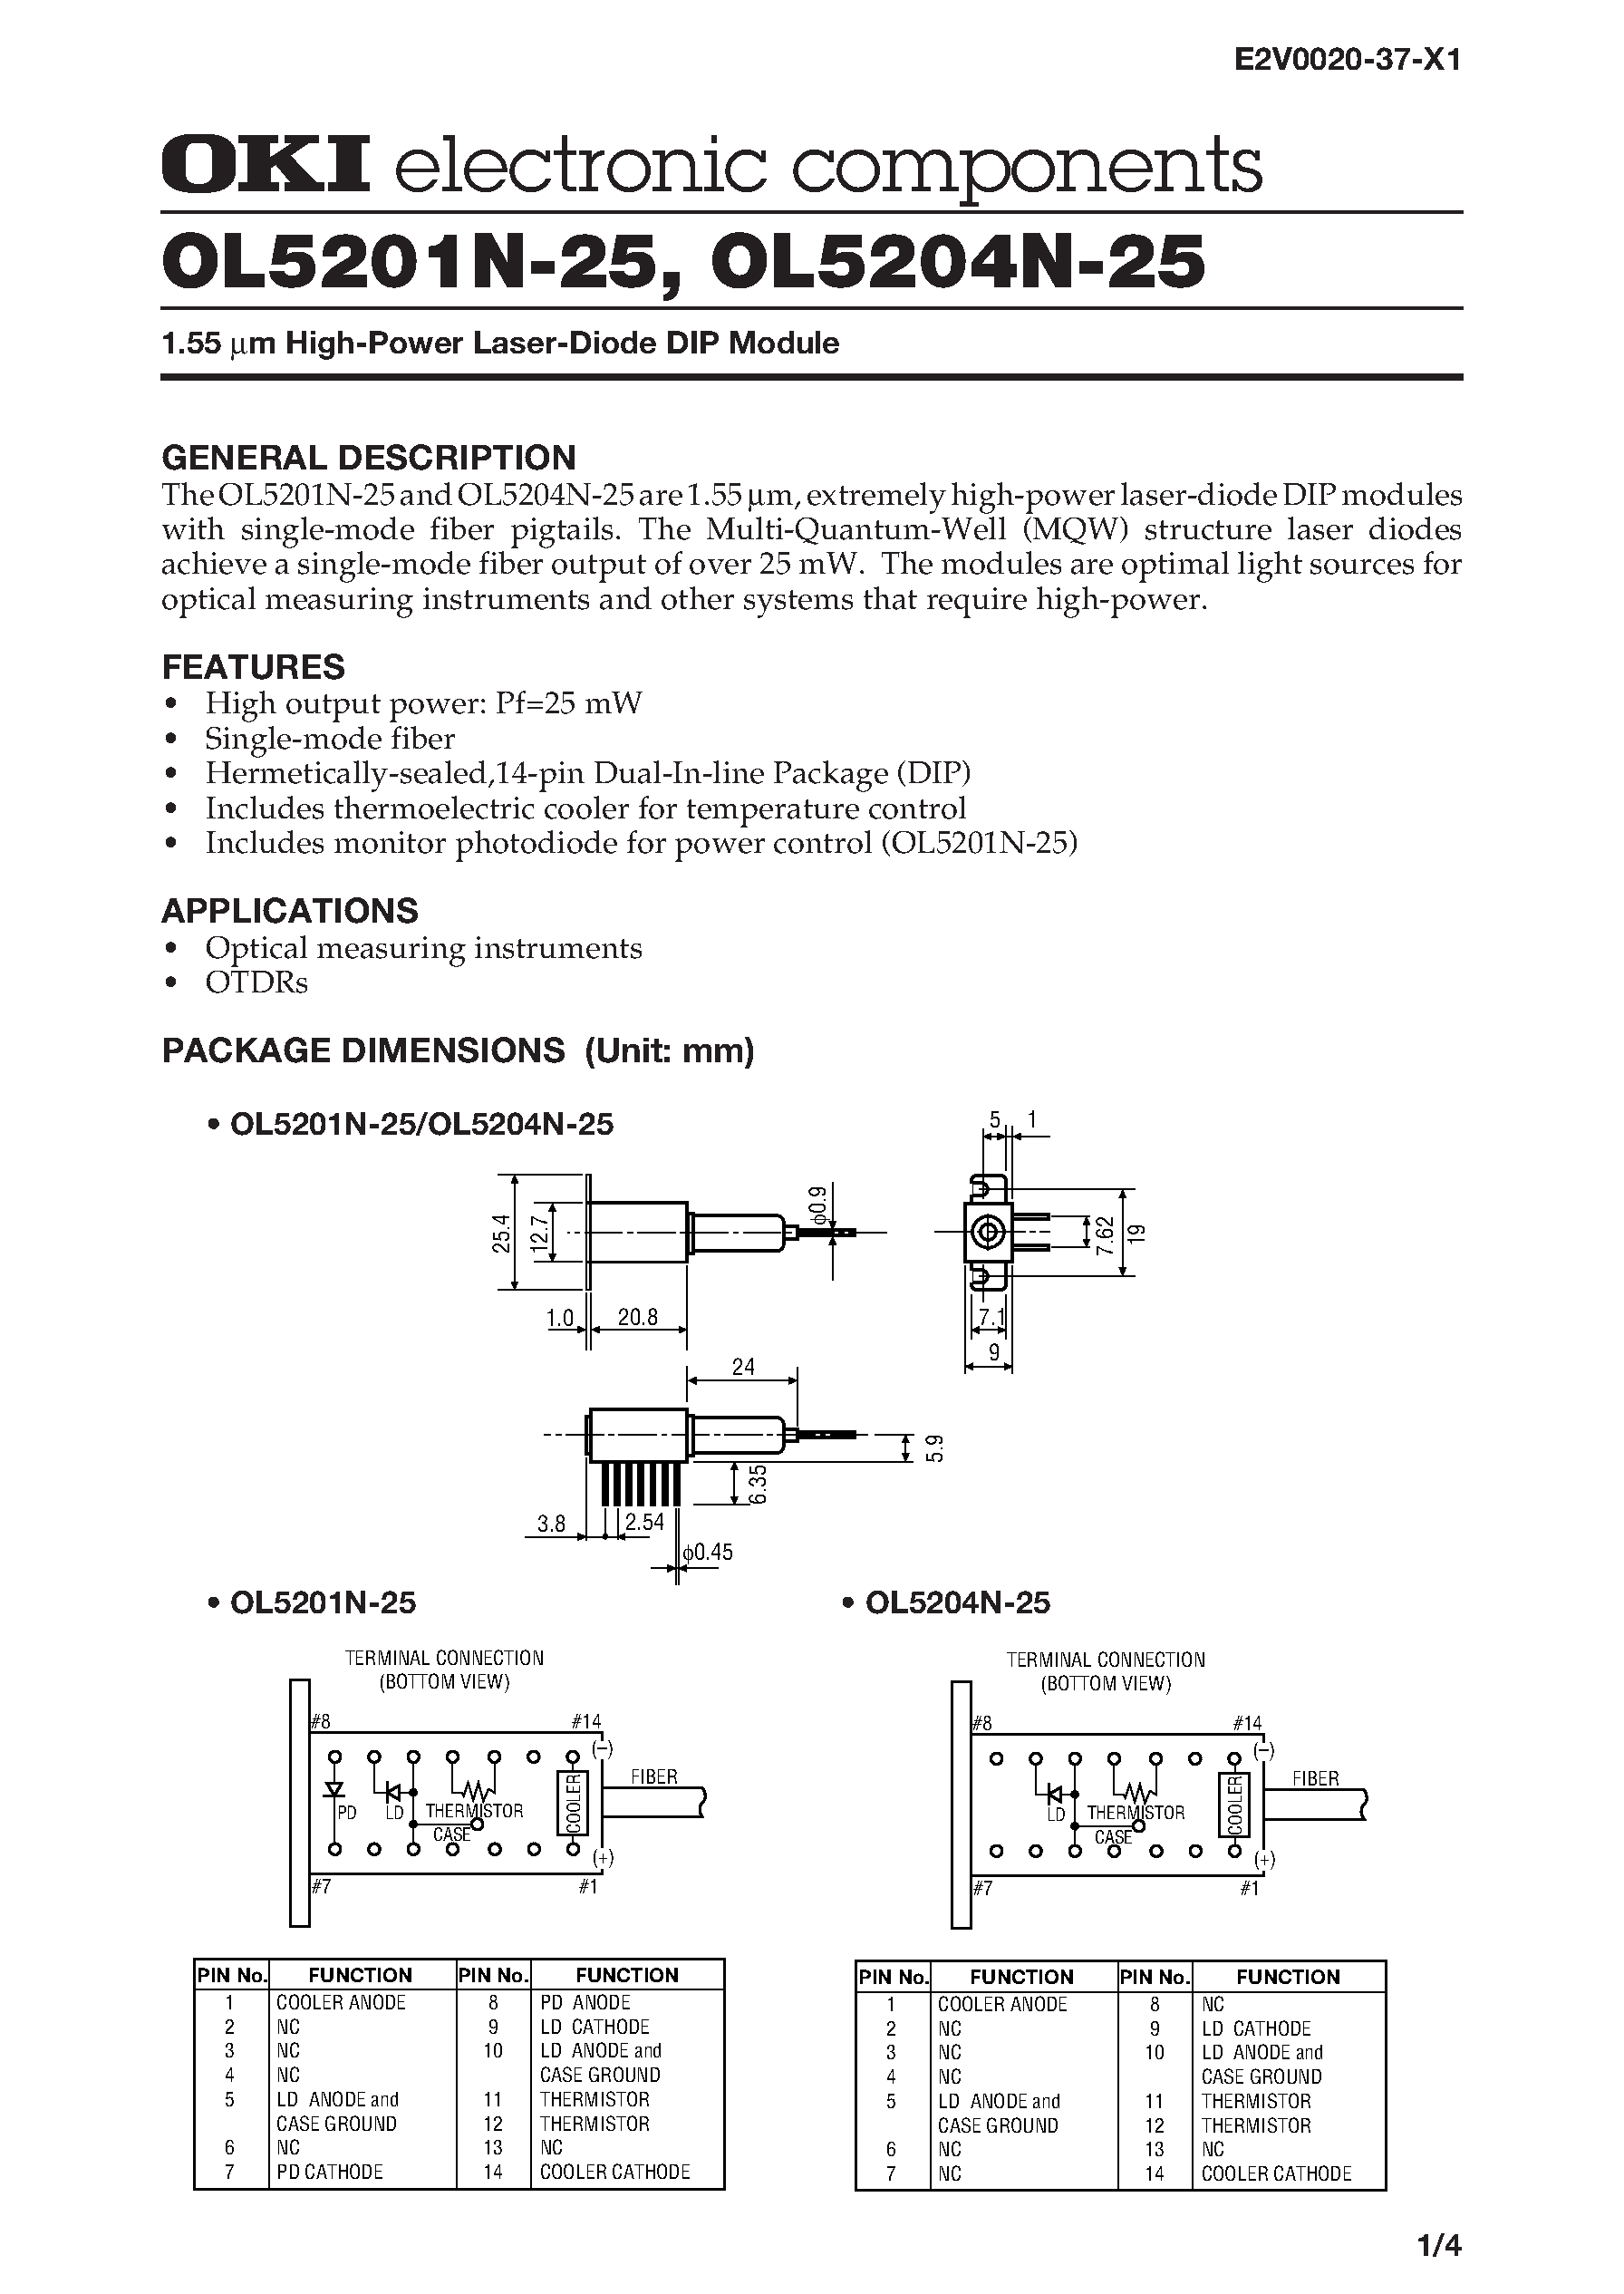 Datasheet OL5204N-25 - 1.55 m High-Power Laser-Diode DIP Module page 1